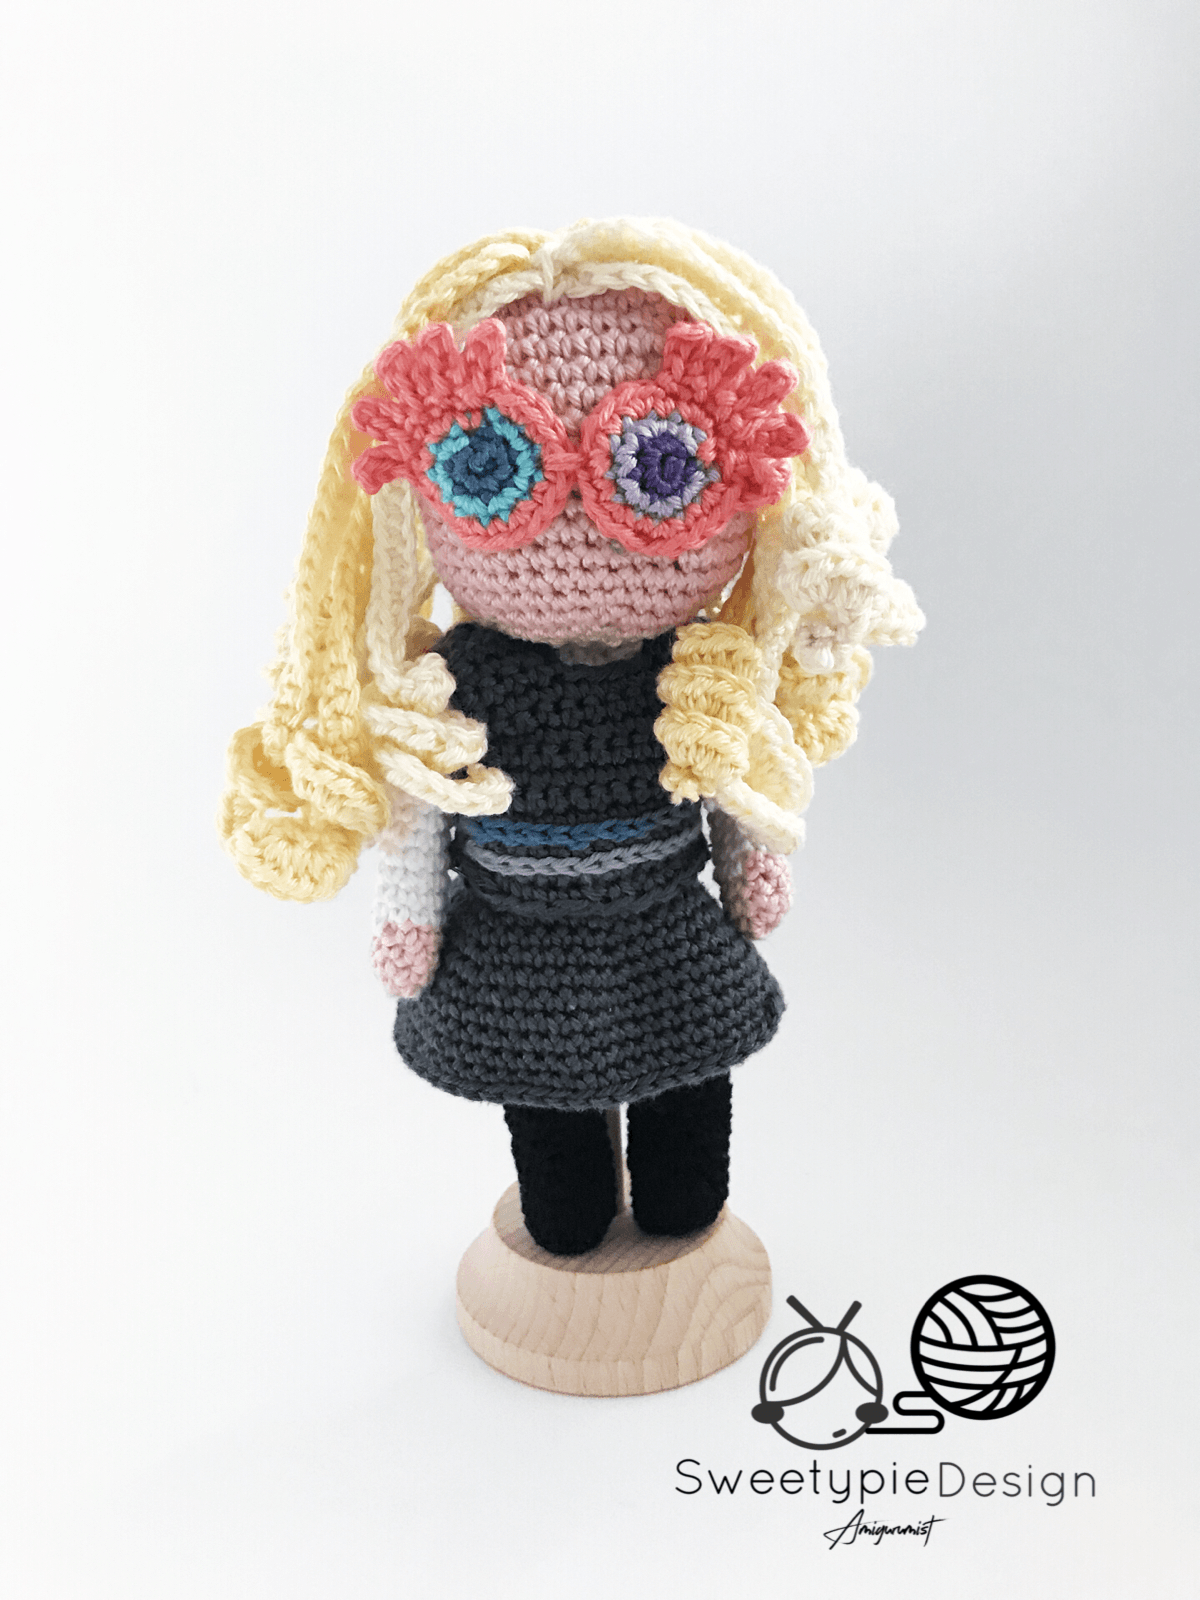 Crochet Harry Potter HP Logo - Luna lovegood crochet pattern by sweetypiedesign /shop